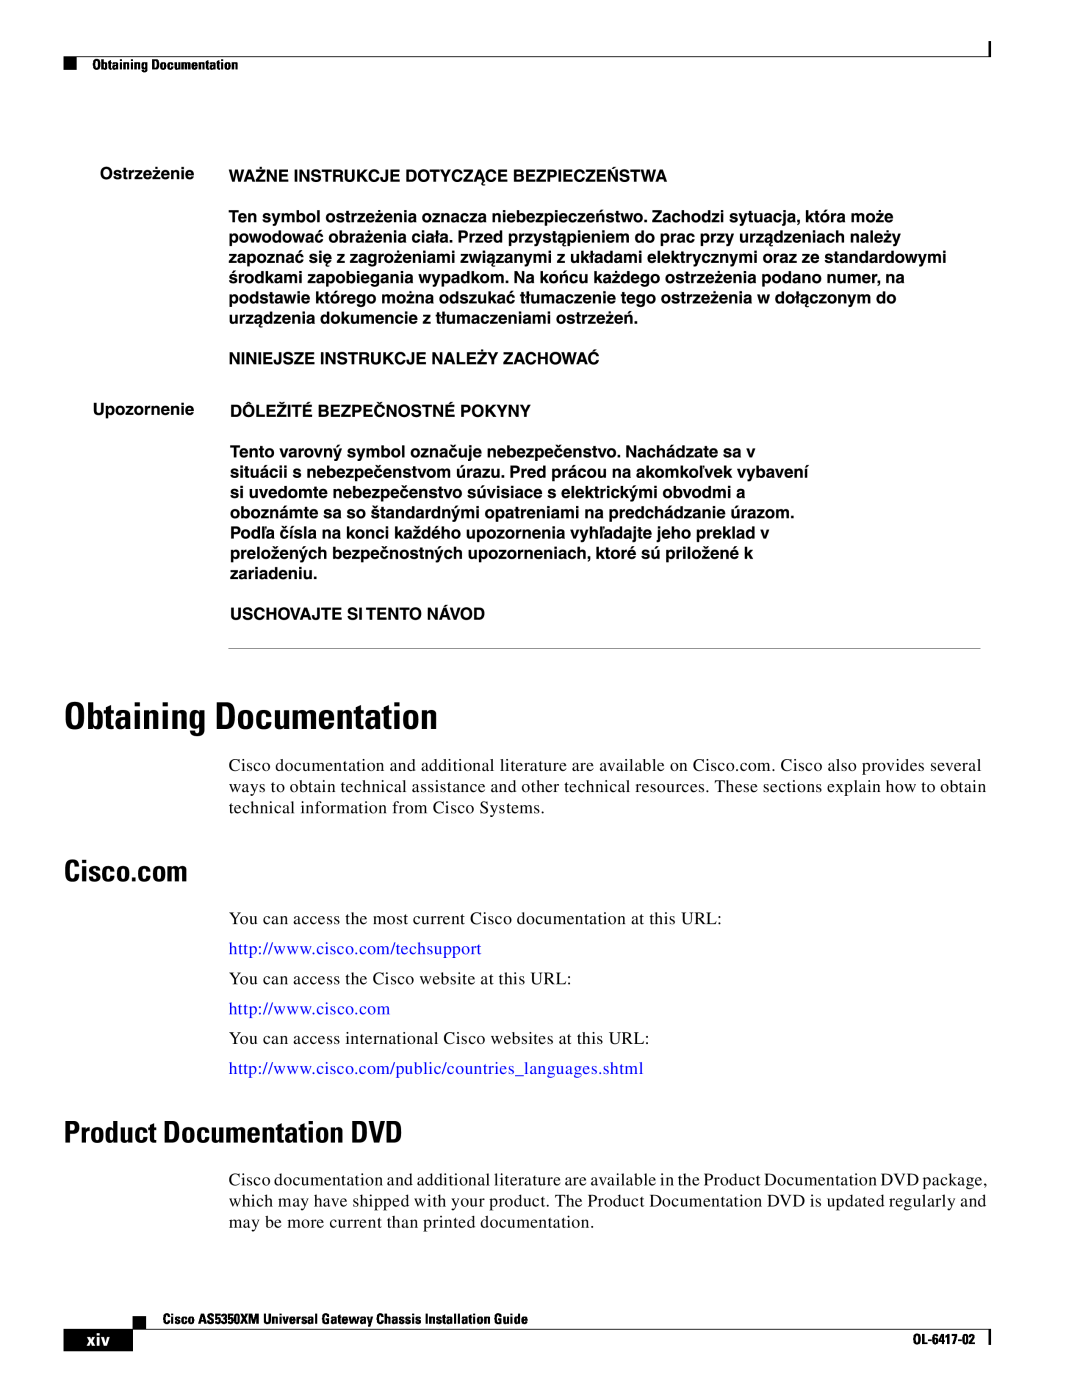 Cisco Systems AS5350XM manual Obtaining Documentation, Cisco.com, Product Documentation DVD 